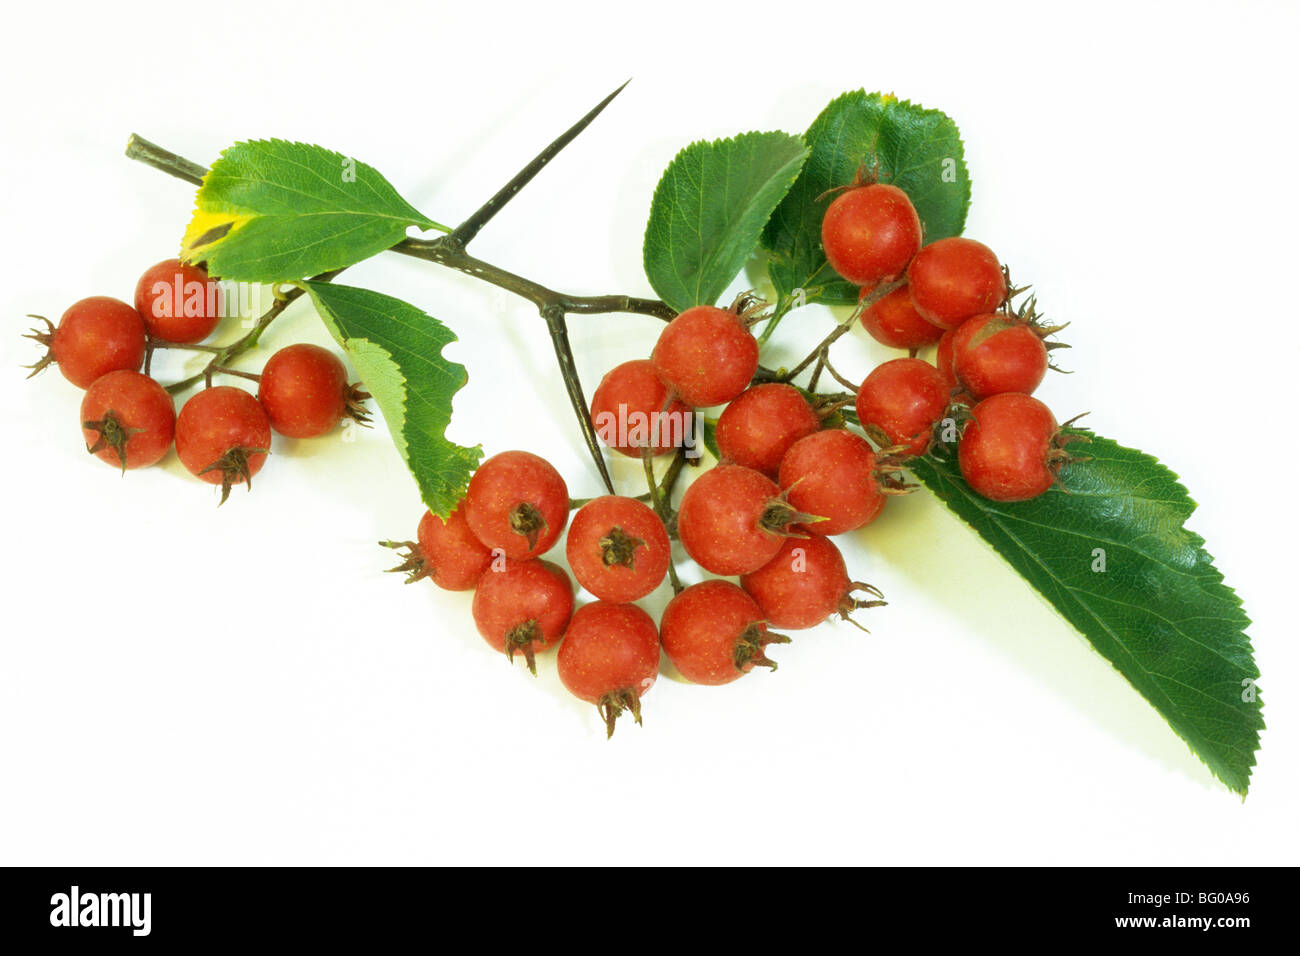 Hawthorn (Crataegus prunifolia, Crataegus persimilis), twig with ripe berries, studio picture. Stock Photo